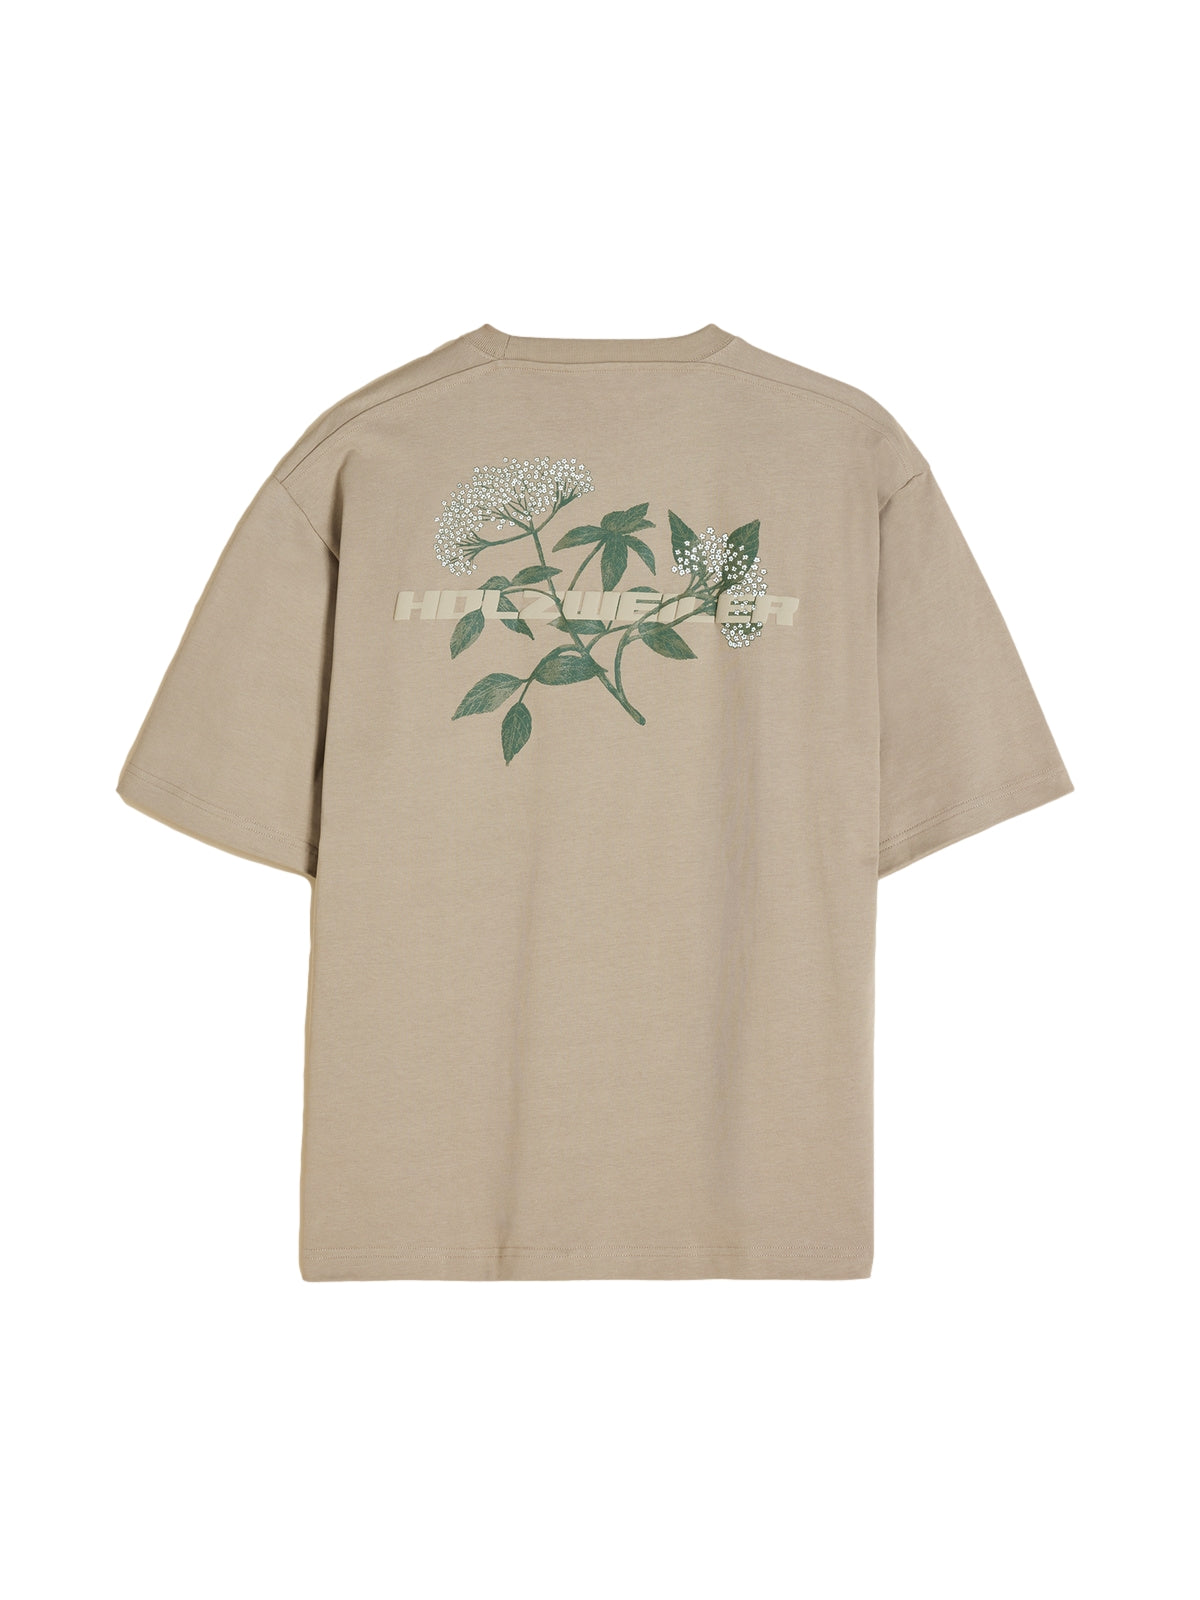 Holzweiler Ranger Elderflower Tee T-shirt Oliven - [shop.name]